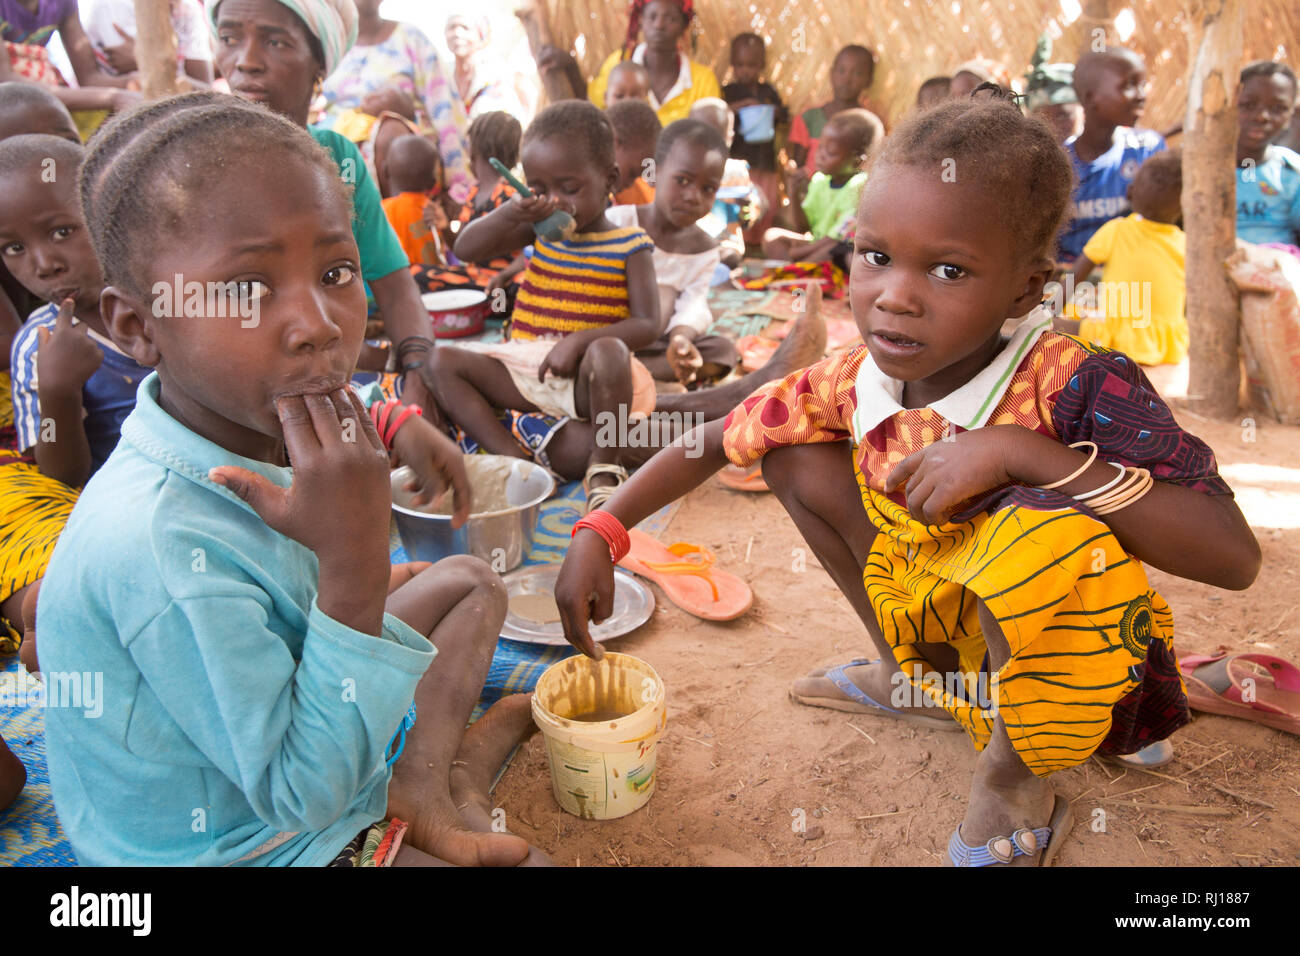 Village de samba, Province de Yako, Burkina Faso. Les enfants malnutris manger bouillie nourrissante après les travailleurs de la santé faire une démonstration de la méthode. Banque D'Images